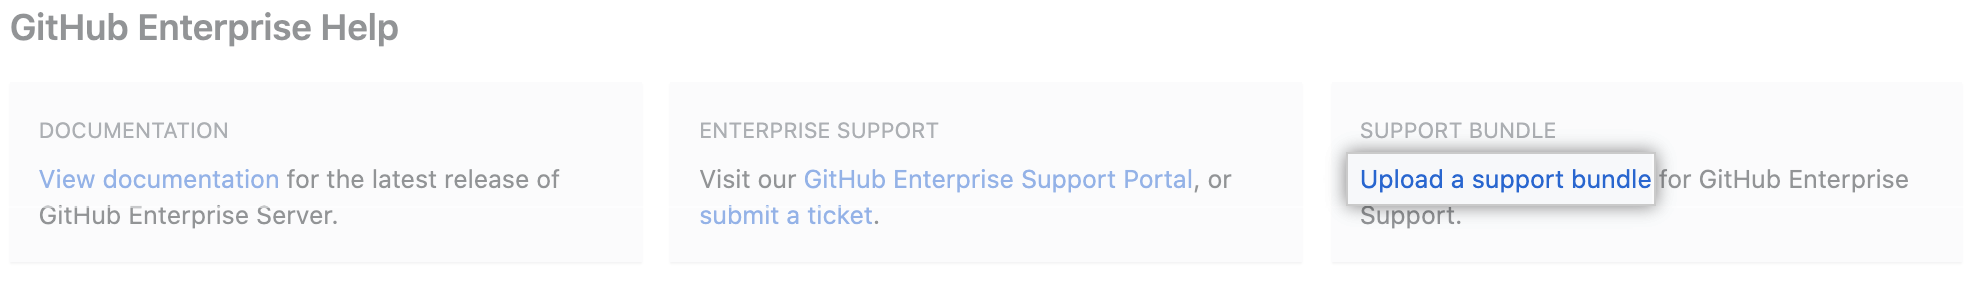 Screenshot showing "Upload a support bundle link".